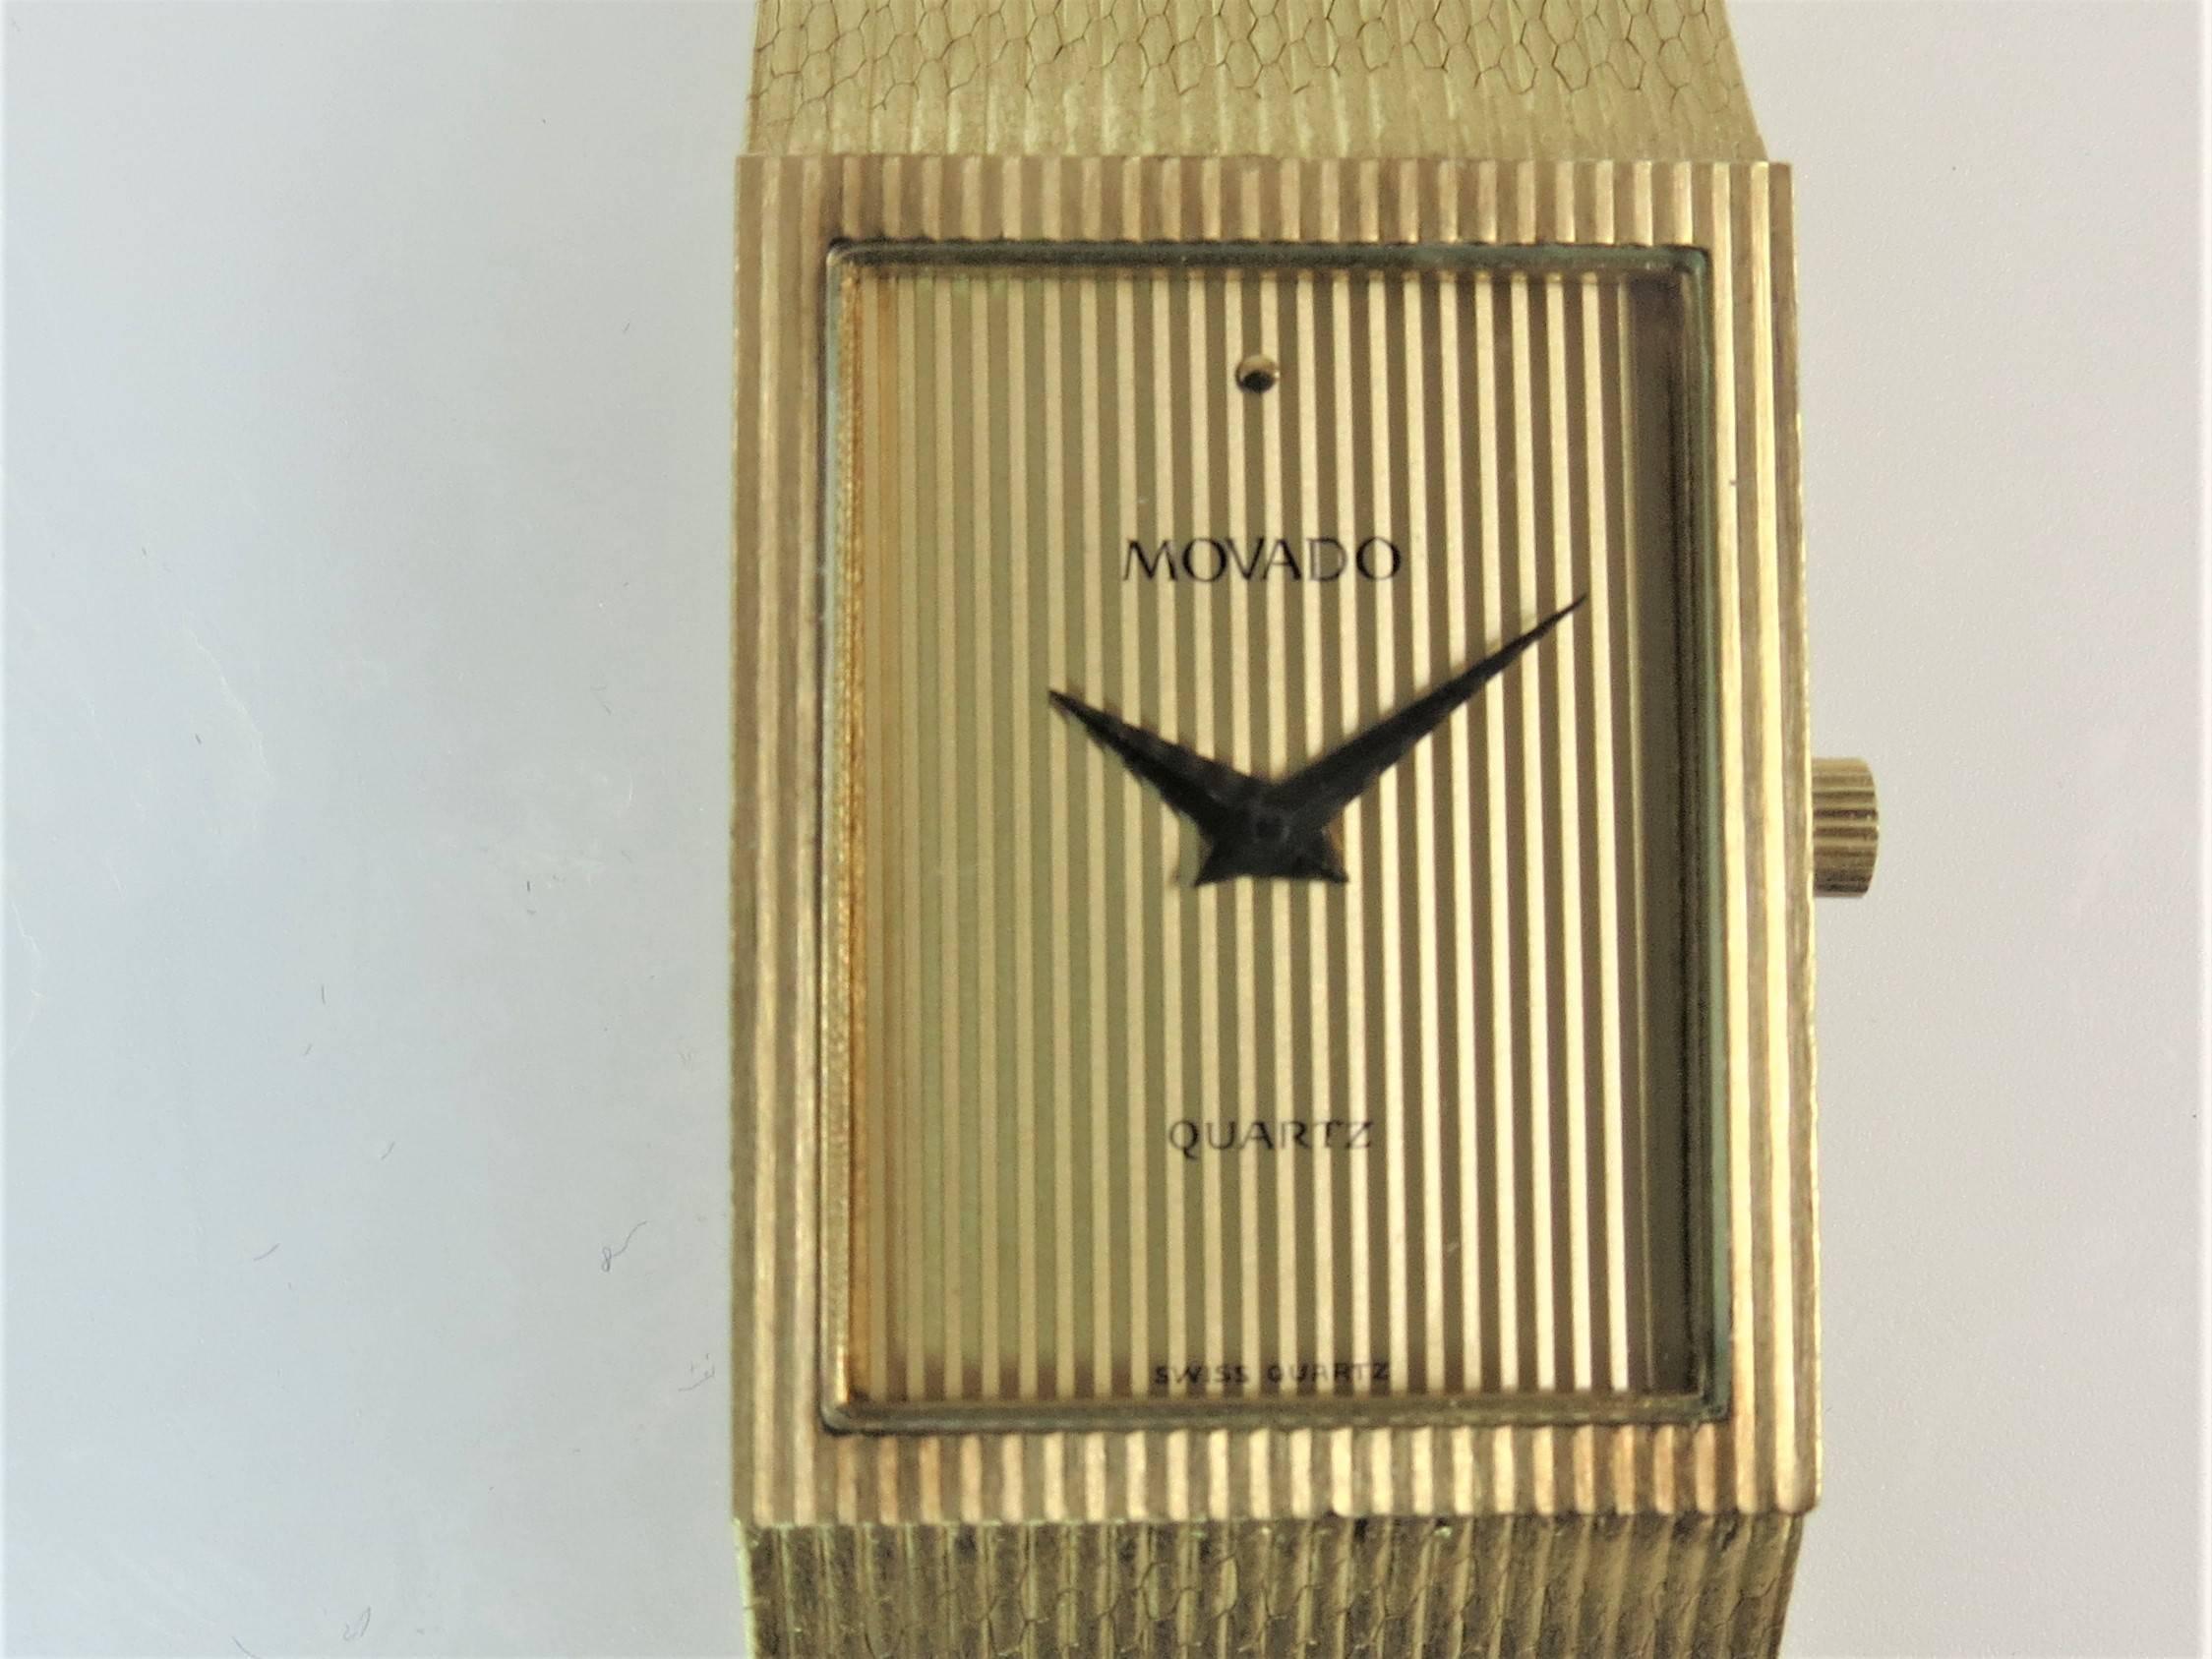 Contemporary Movado Yellow Gold Quartz Bracelet Wristwatch